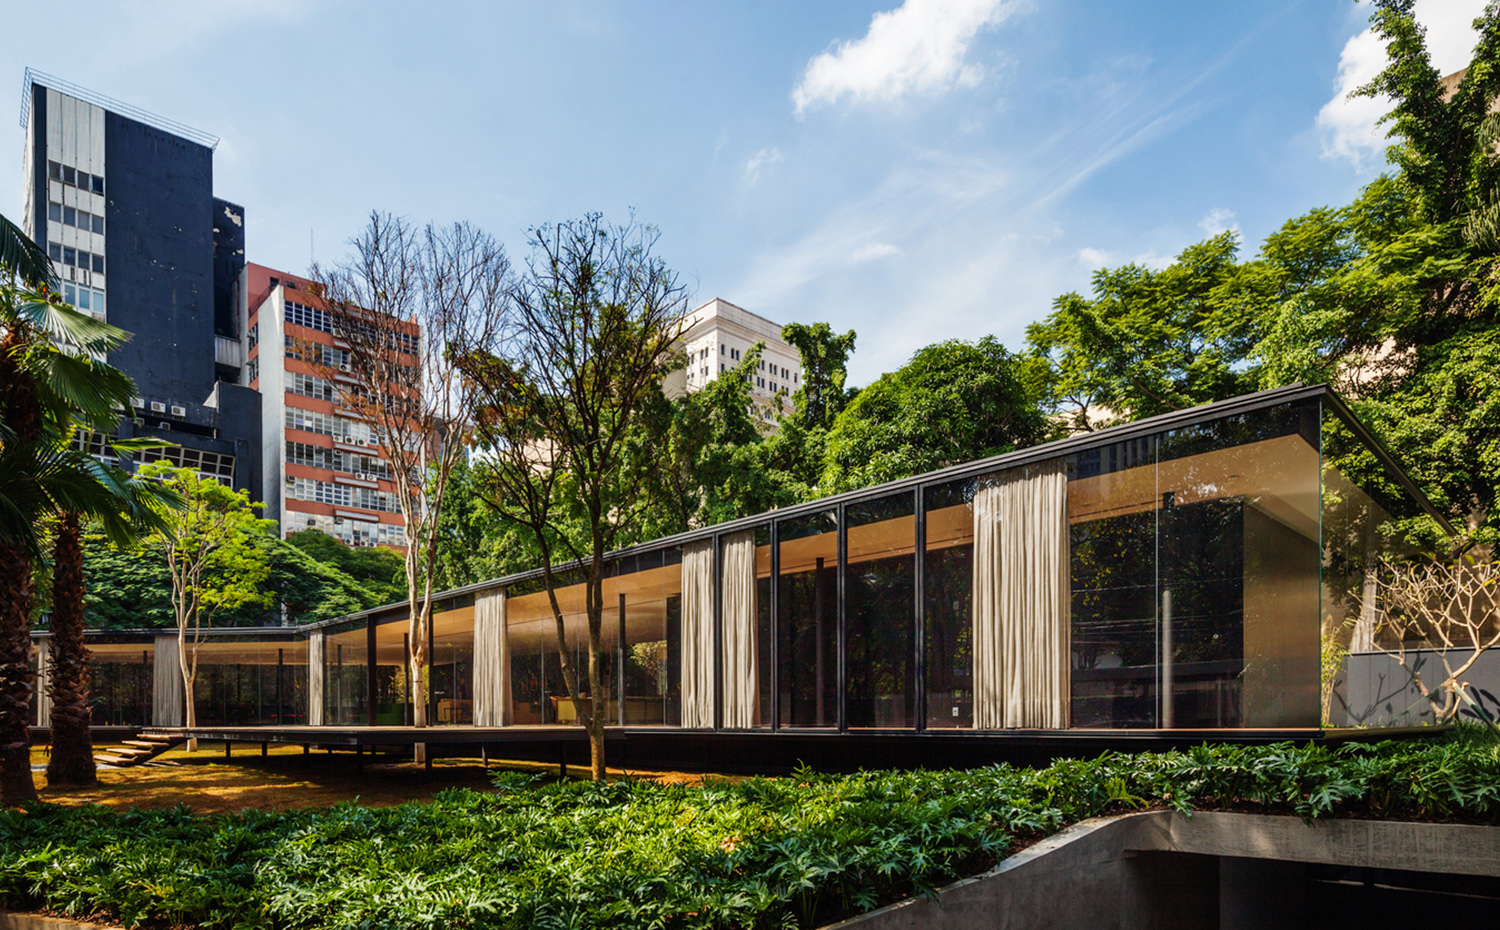 La finca, situada en un barrio de São Paulo, está rodeada de edificios. Un sótano técnico se camufla en el jardín como zona de servicio y almacén